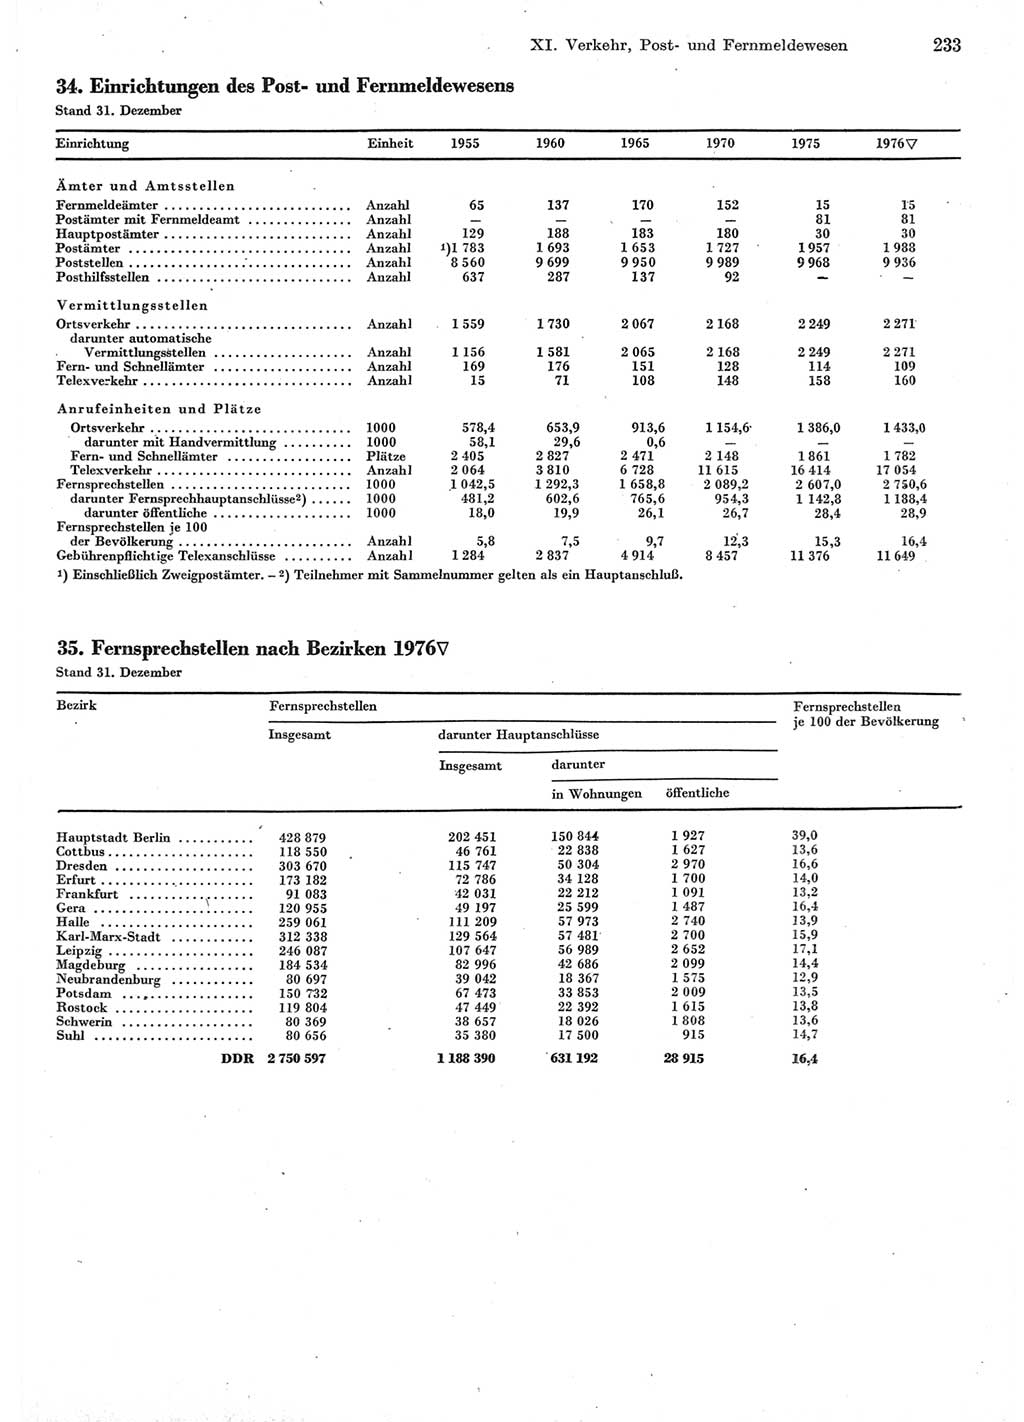 Statistisches Jahrbuch der Deutschen Demokratischen Republik (DDR) 1977, Seite 233 (Stat. Jb. DDR 1977, S. 233)